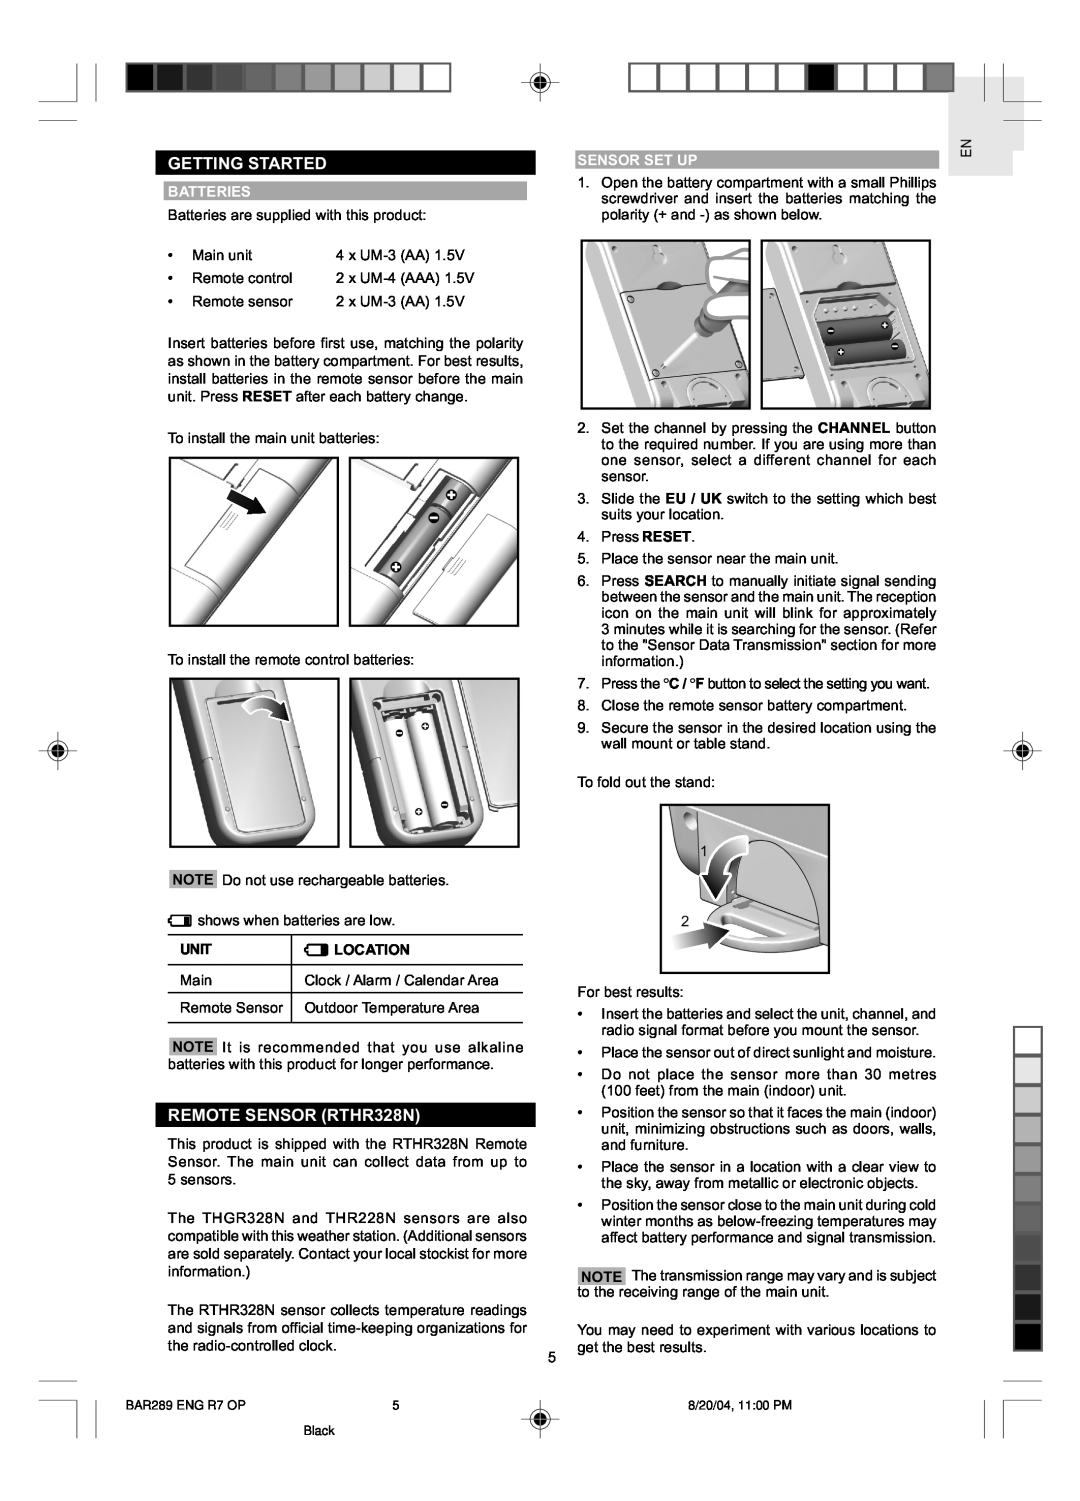 Oregon Scientific BAR289 user manual Getting Started, REMOTE SENSOR RTHR328N, Batteries, Sensor Set Up, Unit, Location 